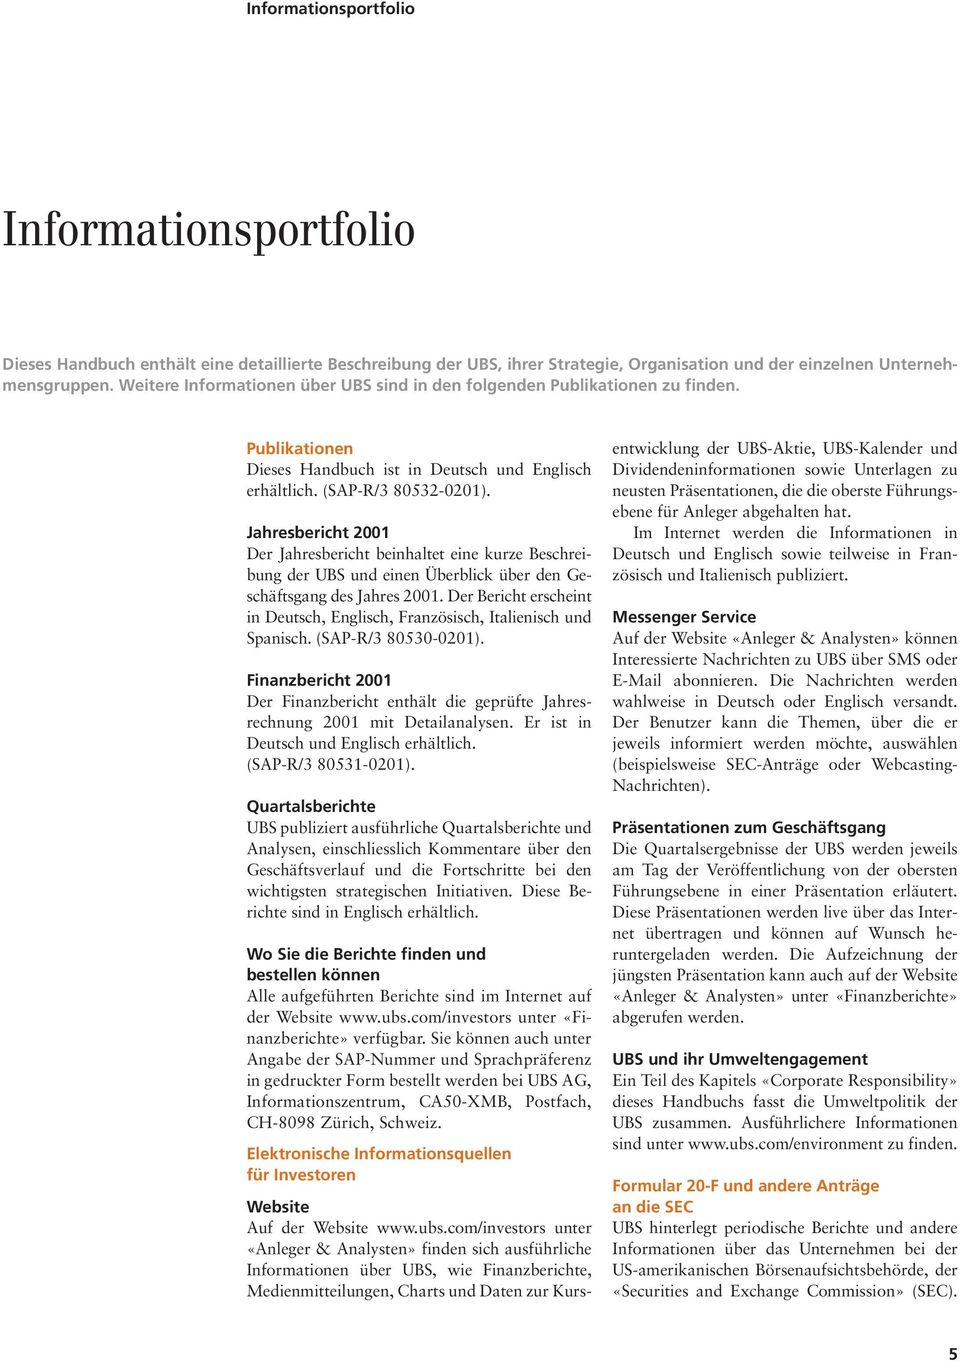 Jahresbericht 2001 Der Jahresbericht beinhaltet eine kurze Beschreibung der UBS und einen Überblick über den Geschäftsgang des Jahres 2001.